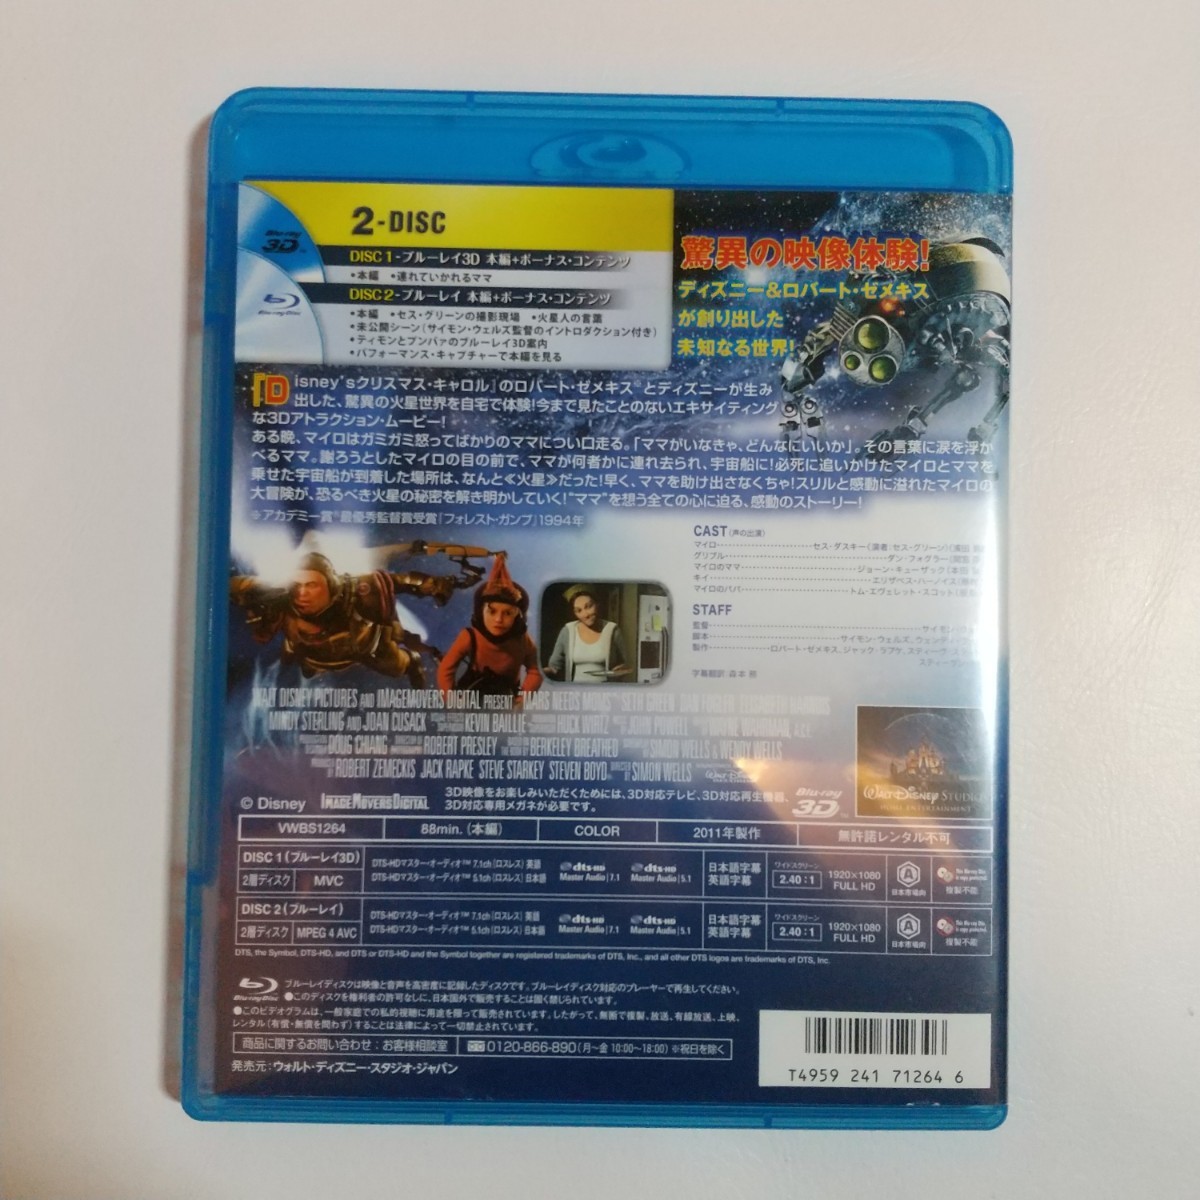 少年マイロの火星冒険記 3Dセット('11米)〈2枚組〉 Blu-ray